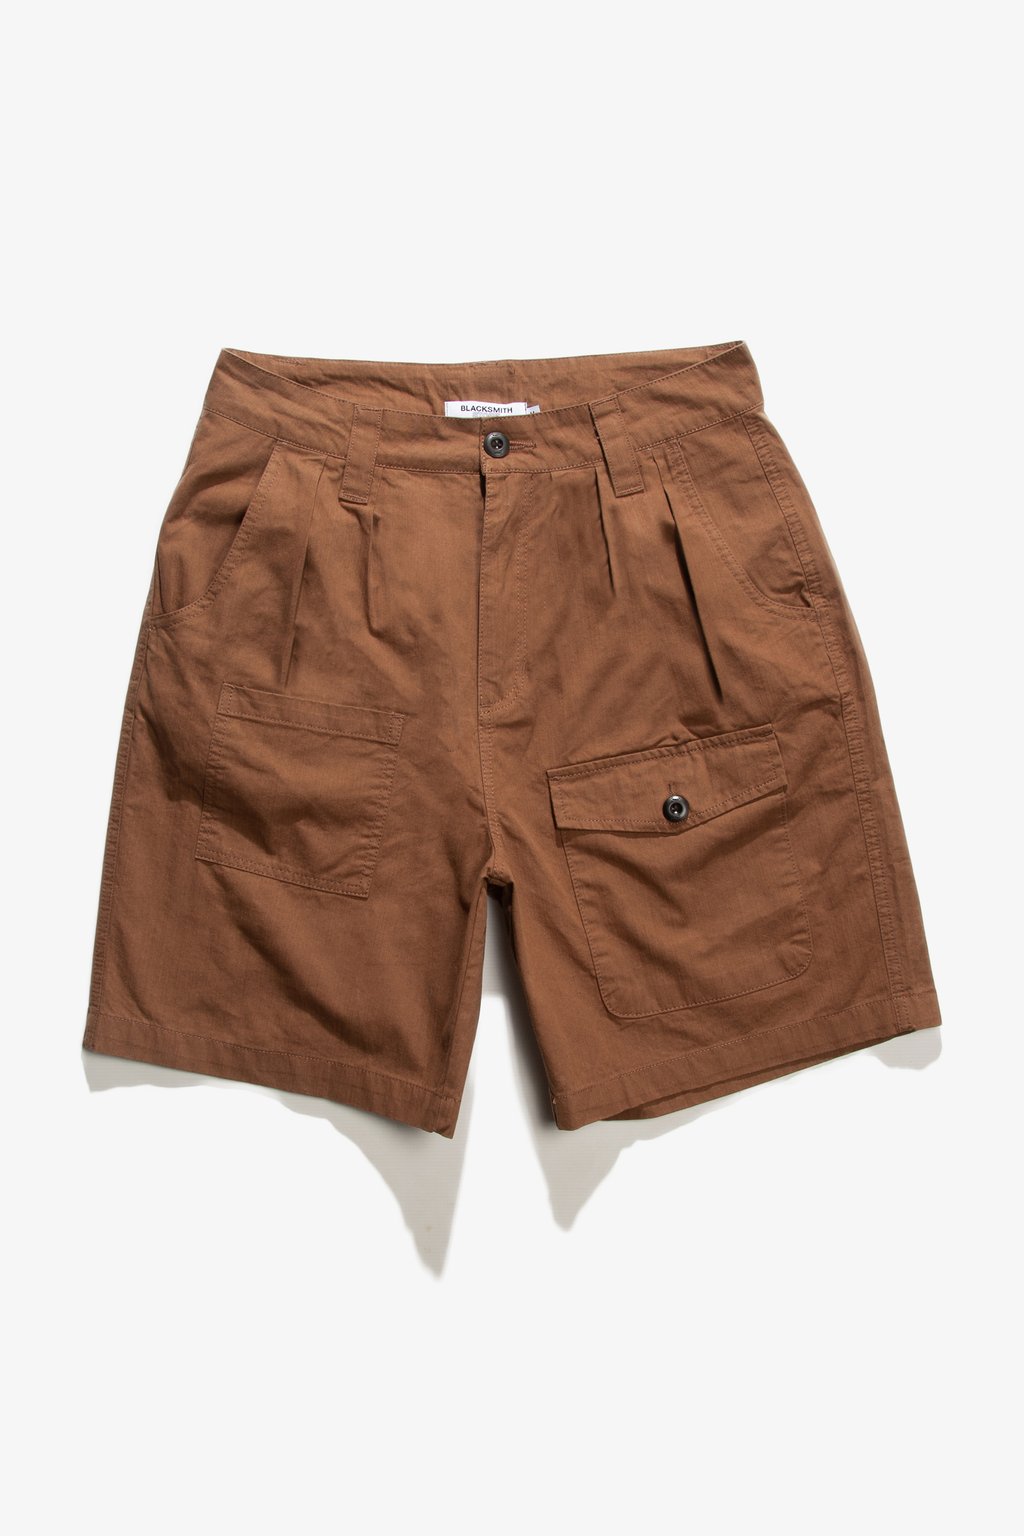 Blacksmith - Sateen Camping Shorts